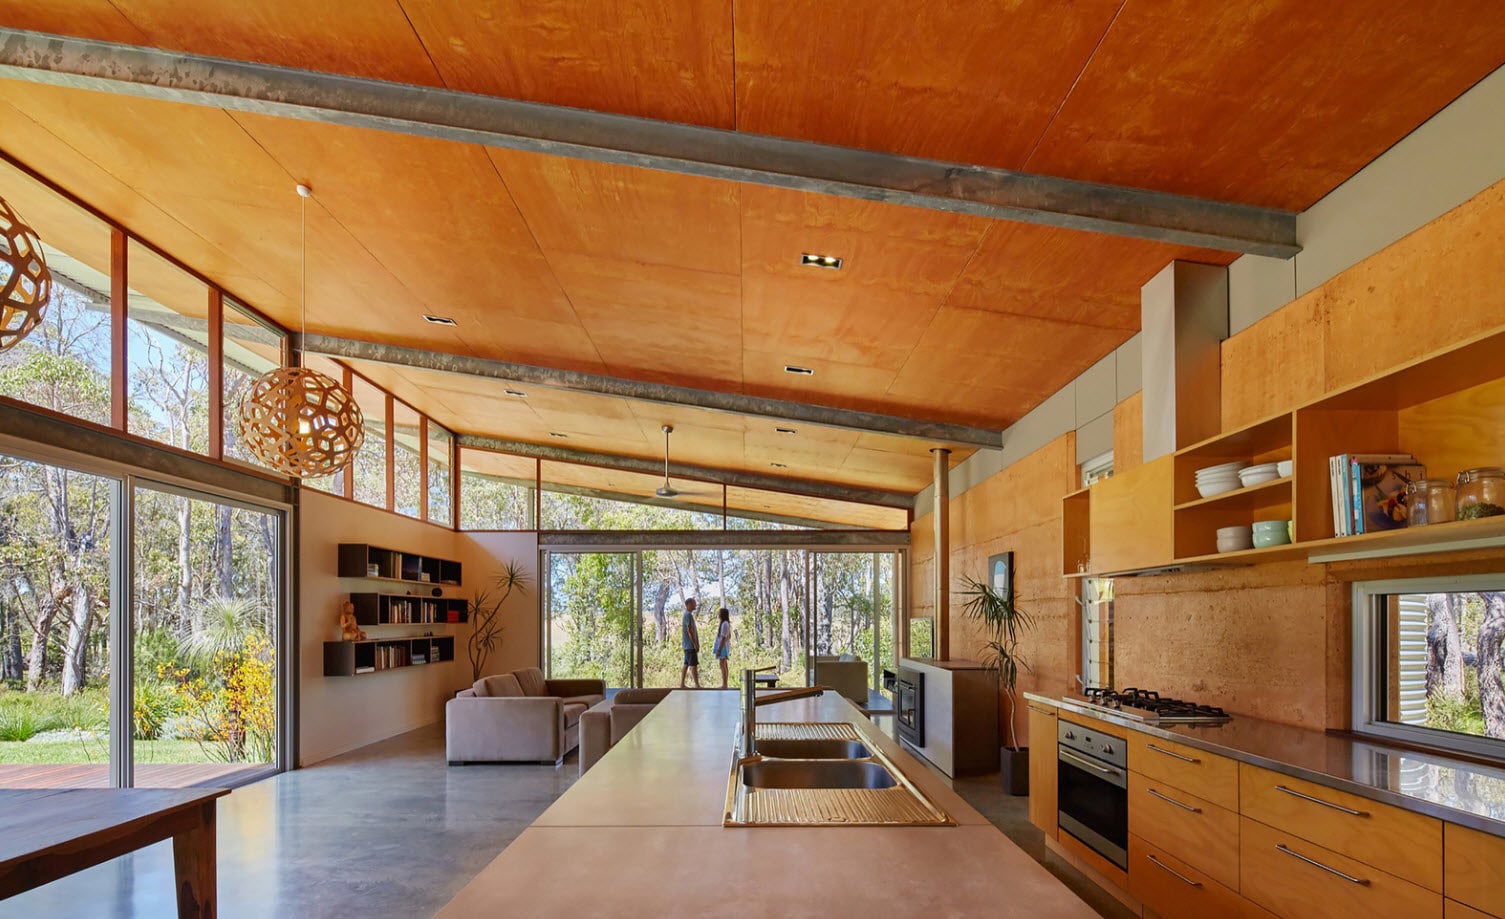 Diseño interior casa rural moderna